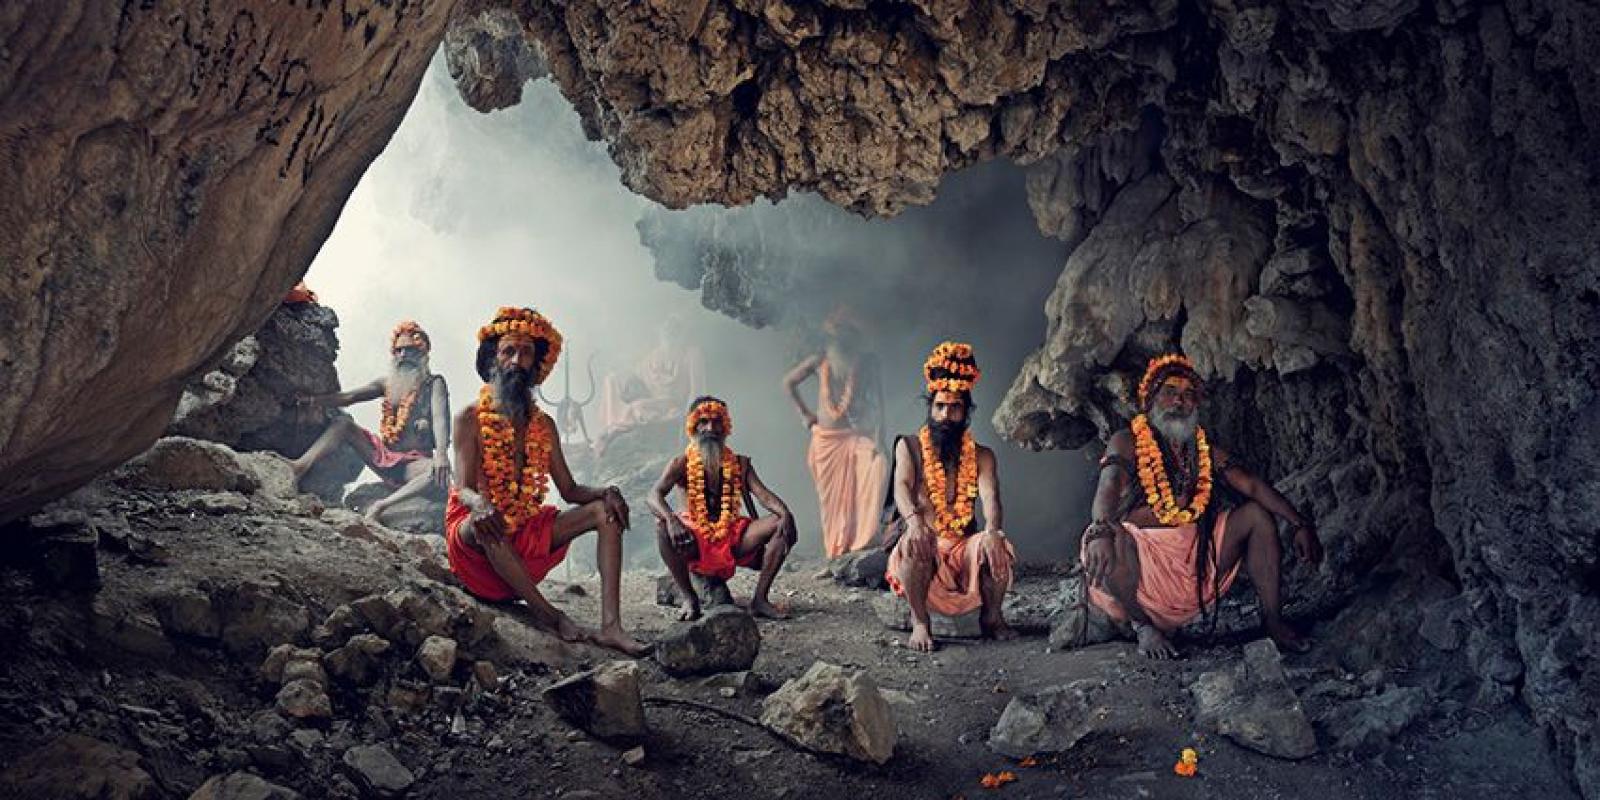 XXIV 1 Höhle, Sadhus, Haridwar

Sadhus (bedeutet "gute Menschen") sind fromme, religiöse Hindus, die in ganz Indien leben. Sie tragen orangefarbene Kleidung, die die Farbe des Feuers repräsentiert, in dem sie all ihre Besitztümer verbrannt haben, um